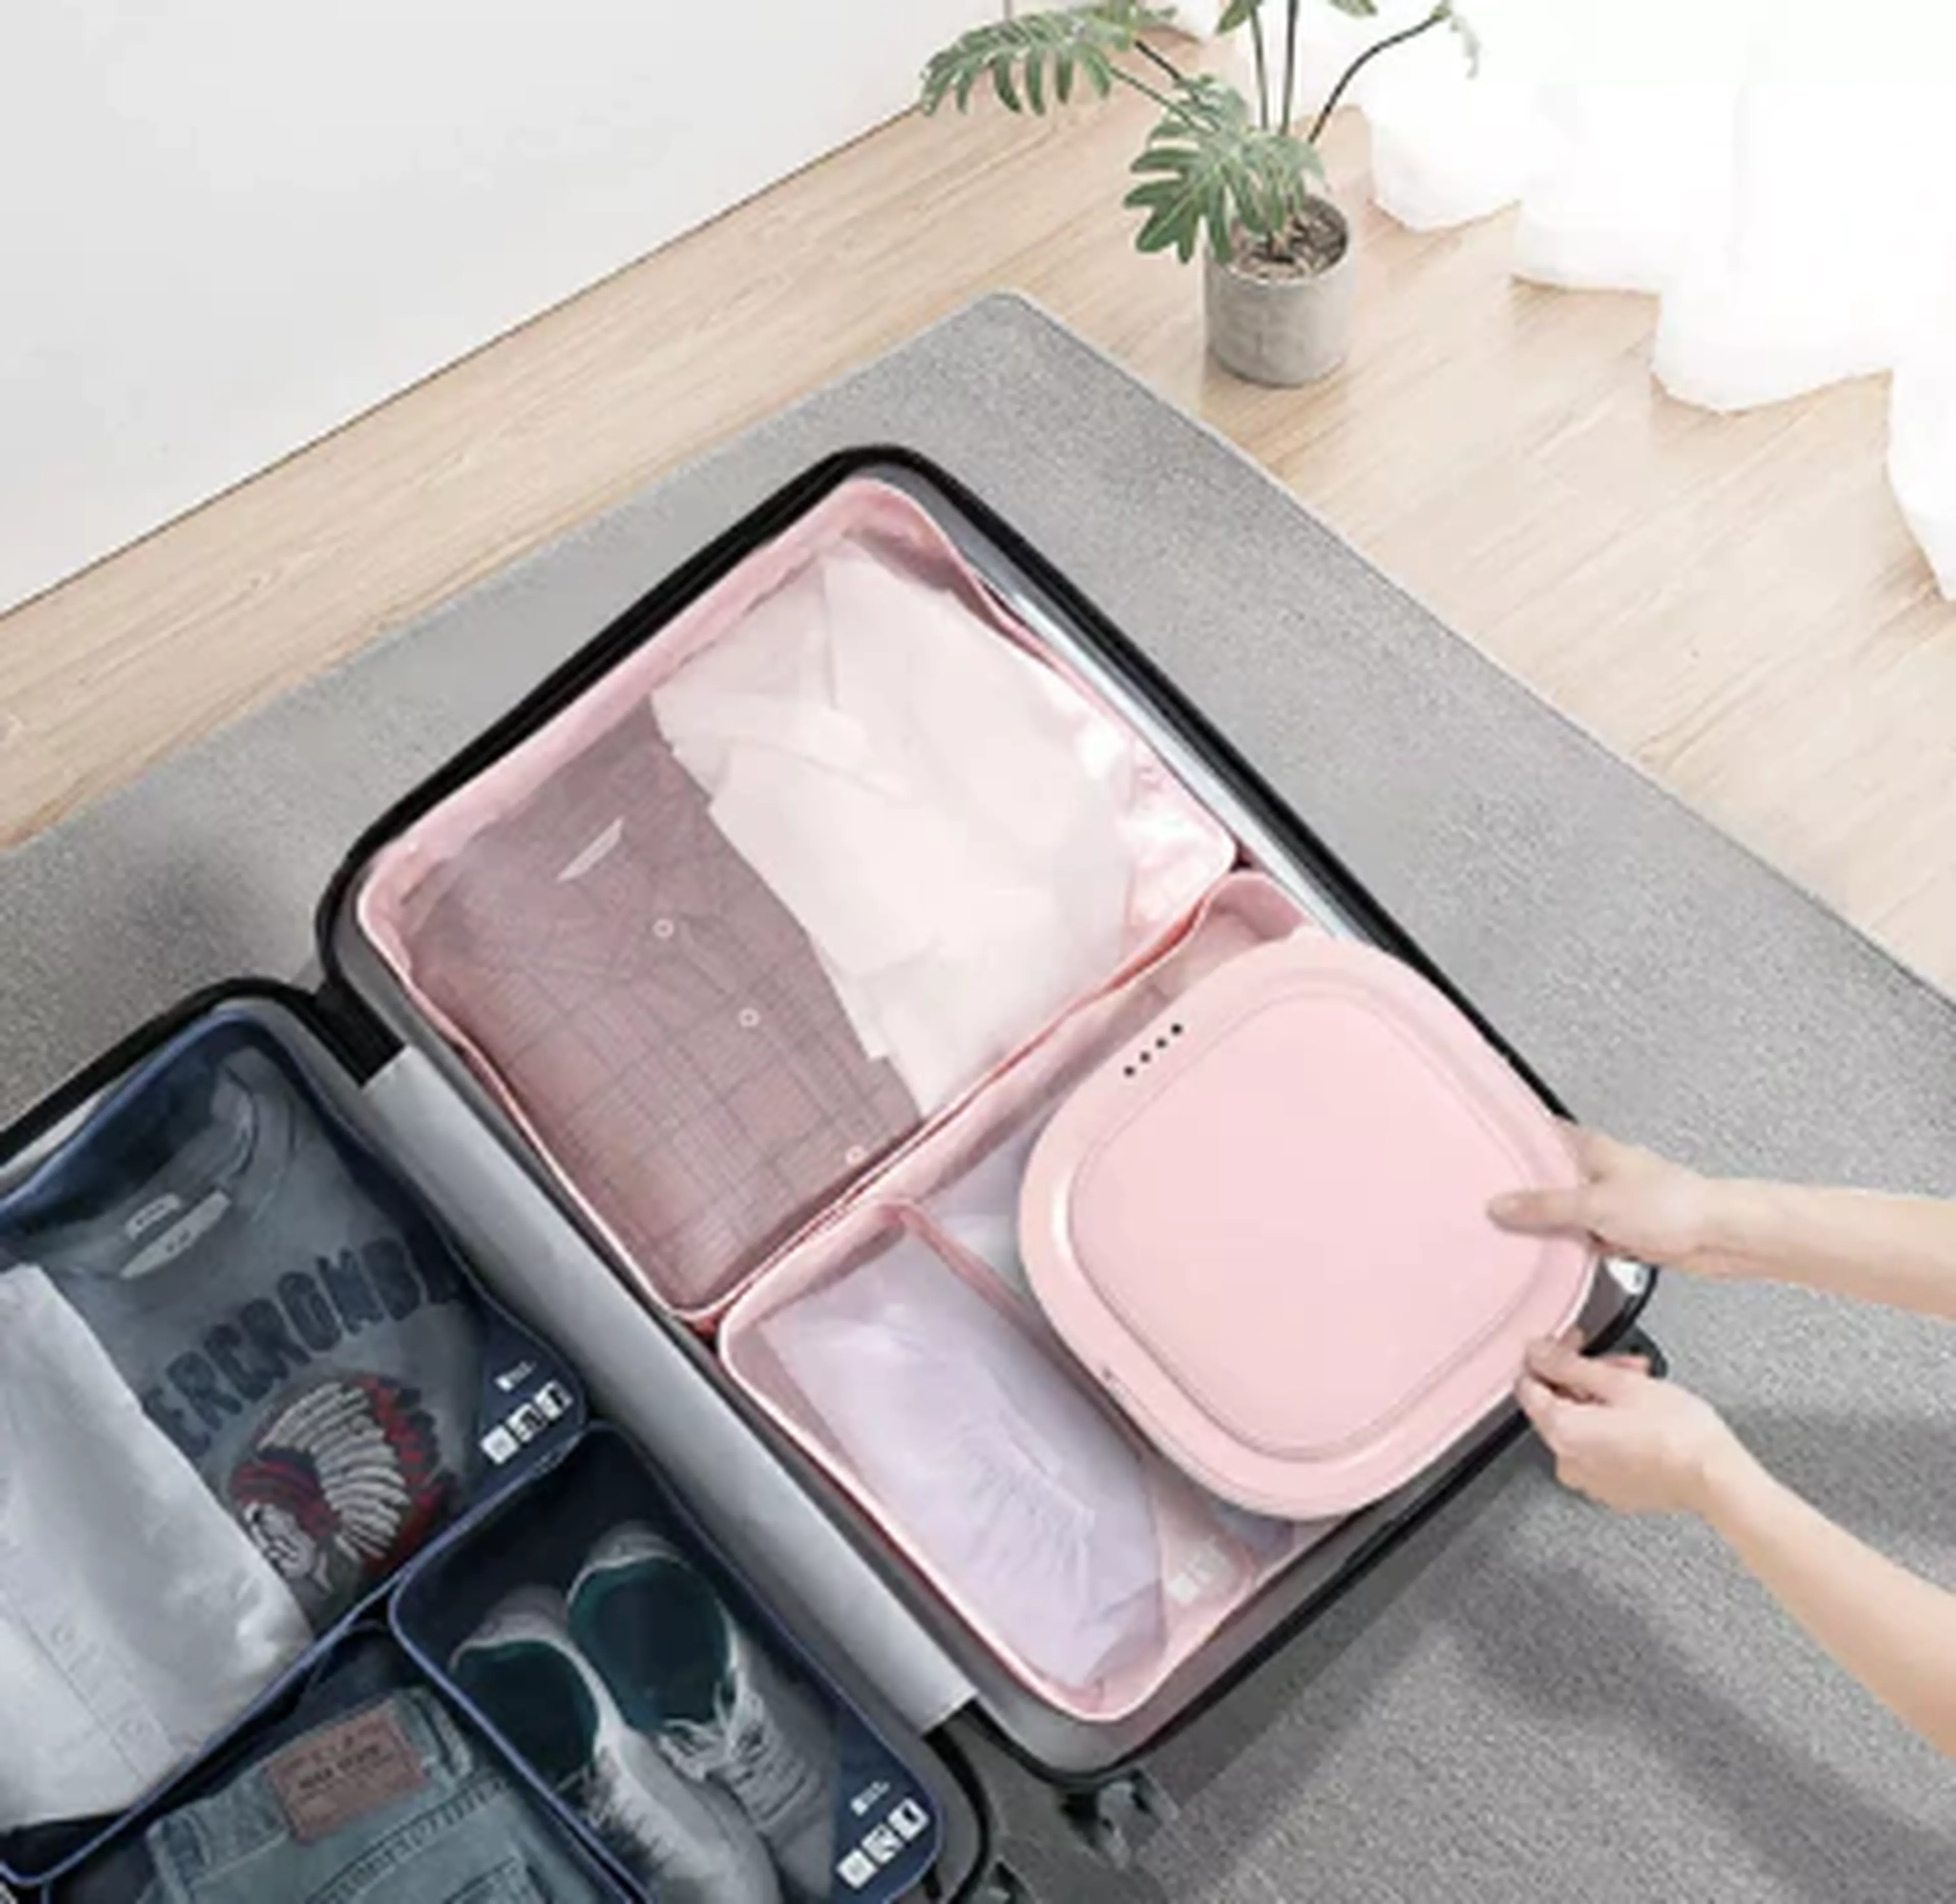 Xiaomi lanza una lavadora plegable para los viajes: ocupa poco